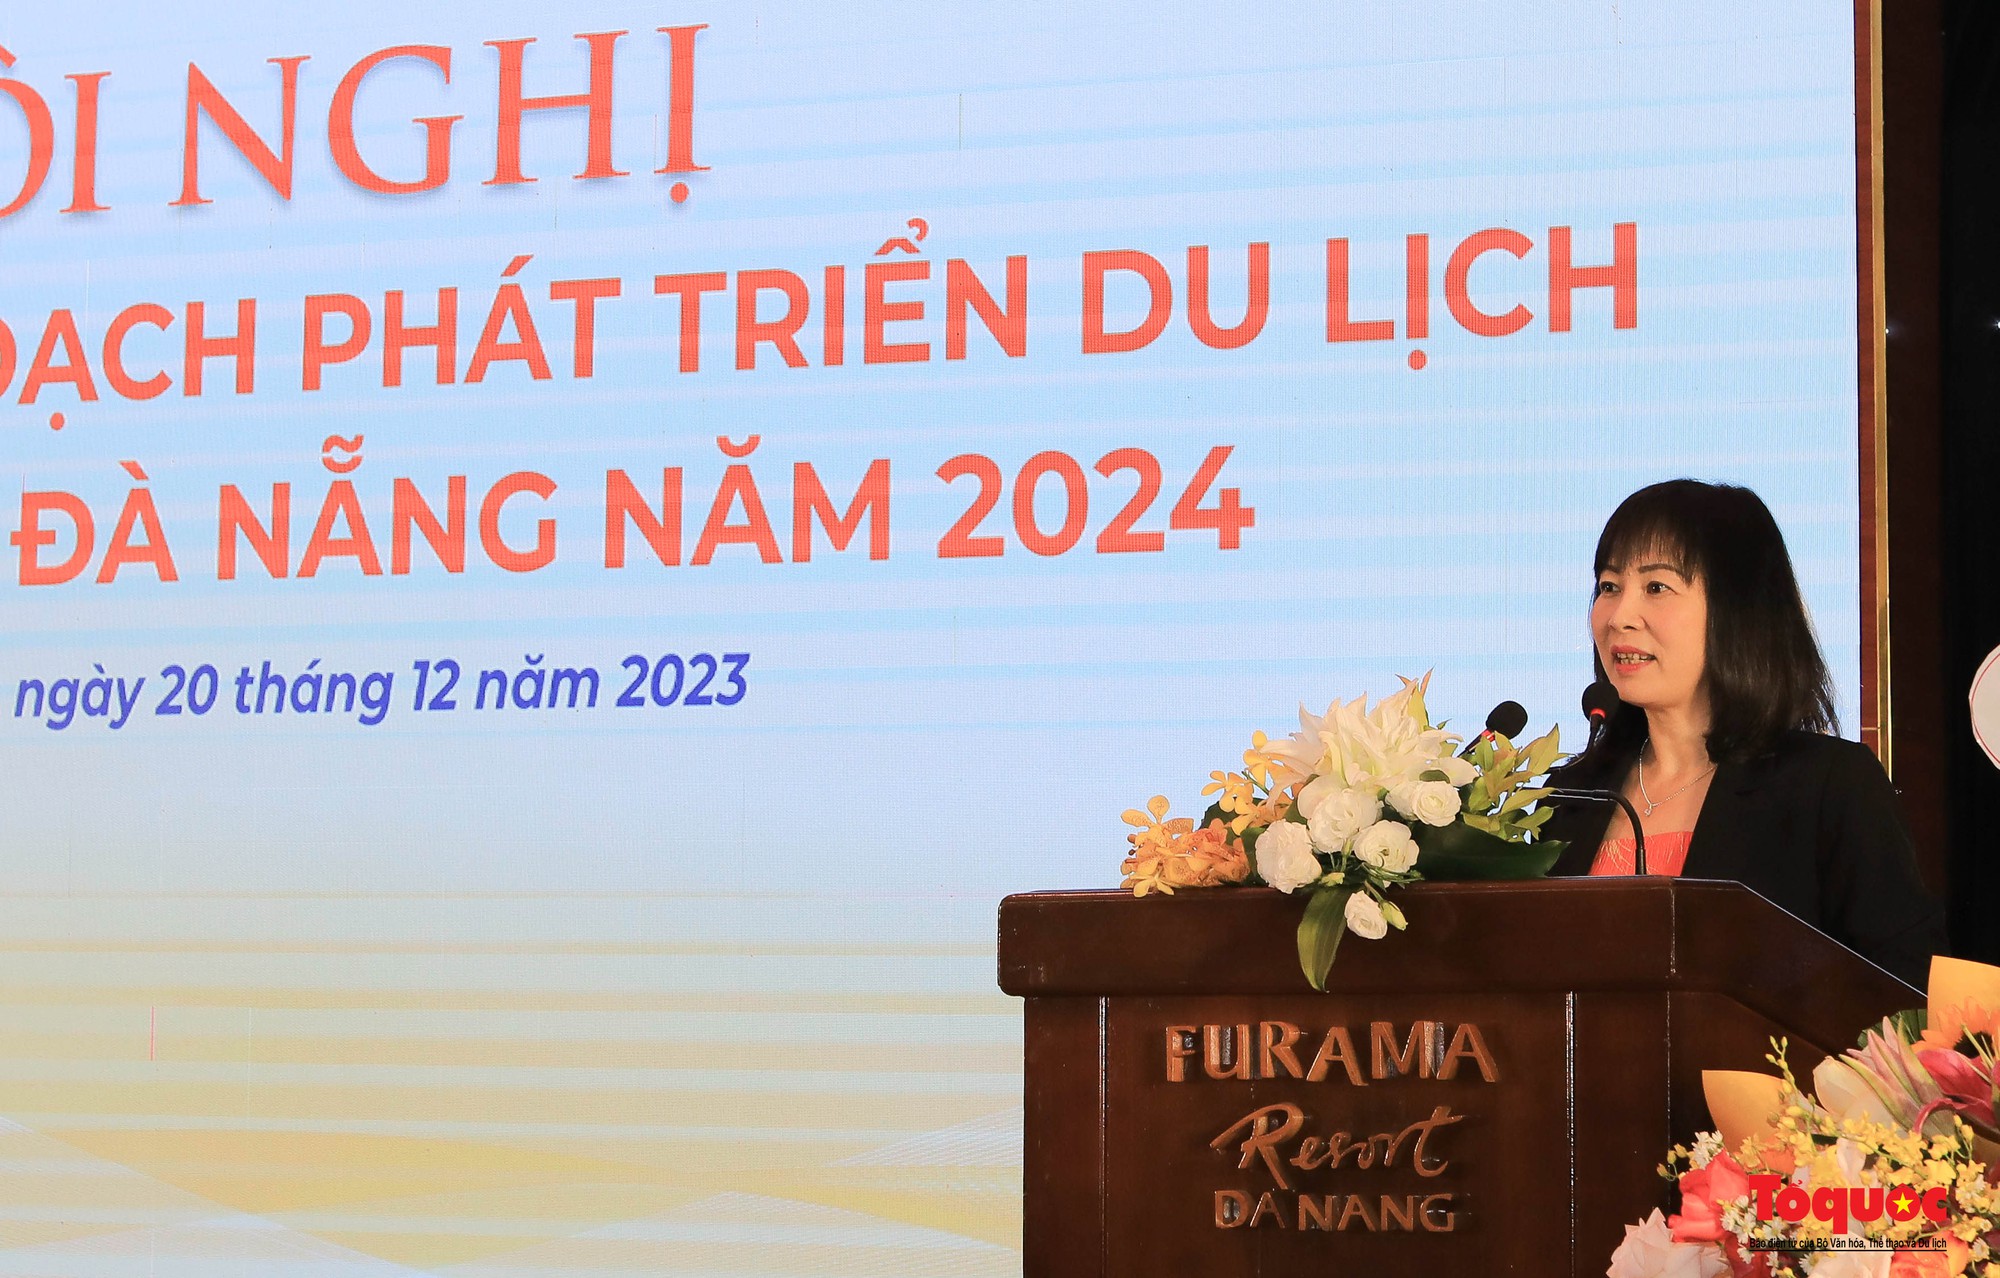 Năm 2024, Đà Nẵng đặt chỉ tiêu thu hút hơn 8,4 triệu lượt khách lưu trú - Ảnh 3.